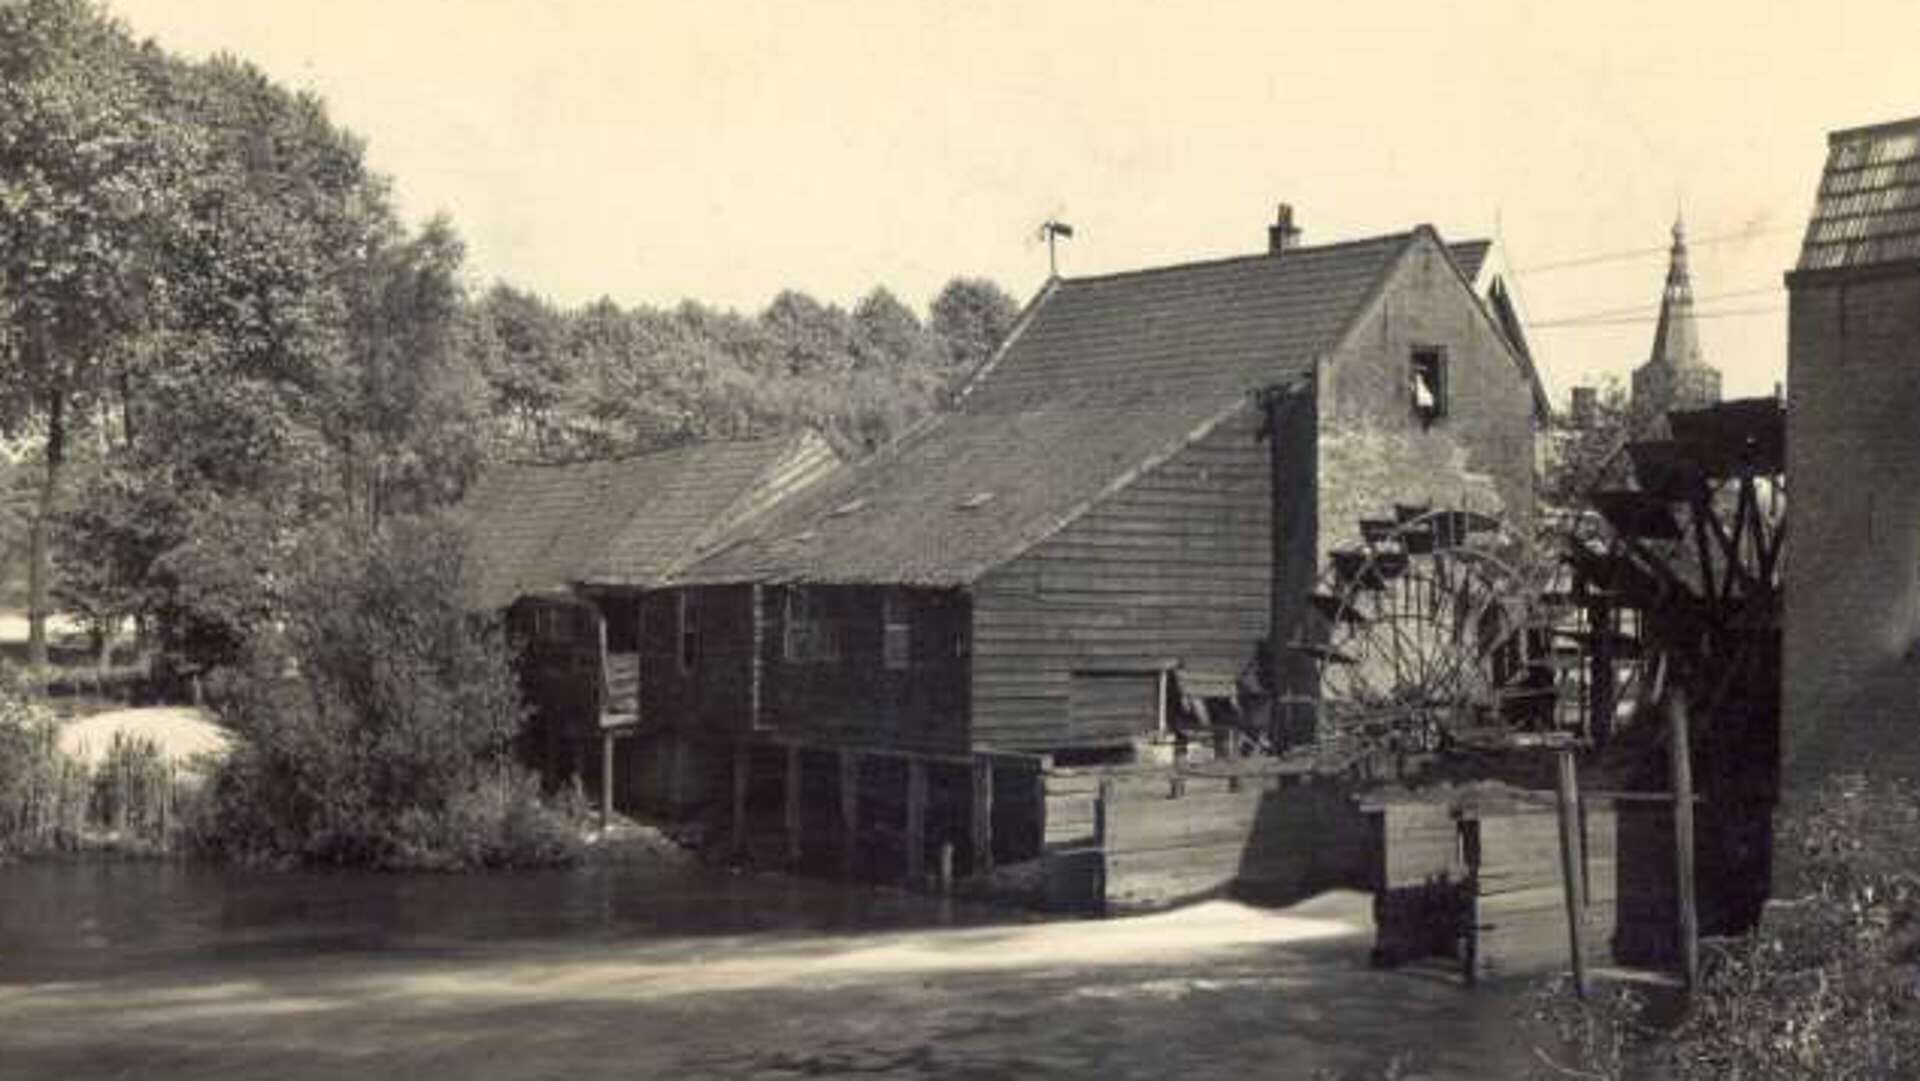 Watermolen aan de Molenstraat. De foto is naar schatting gemaakt in de periode 1900-1934.